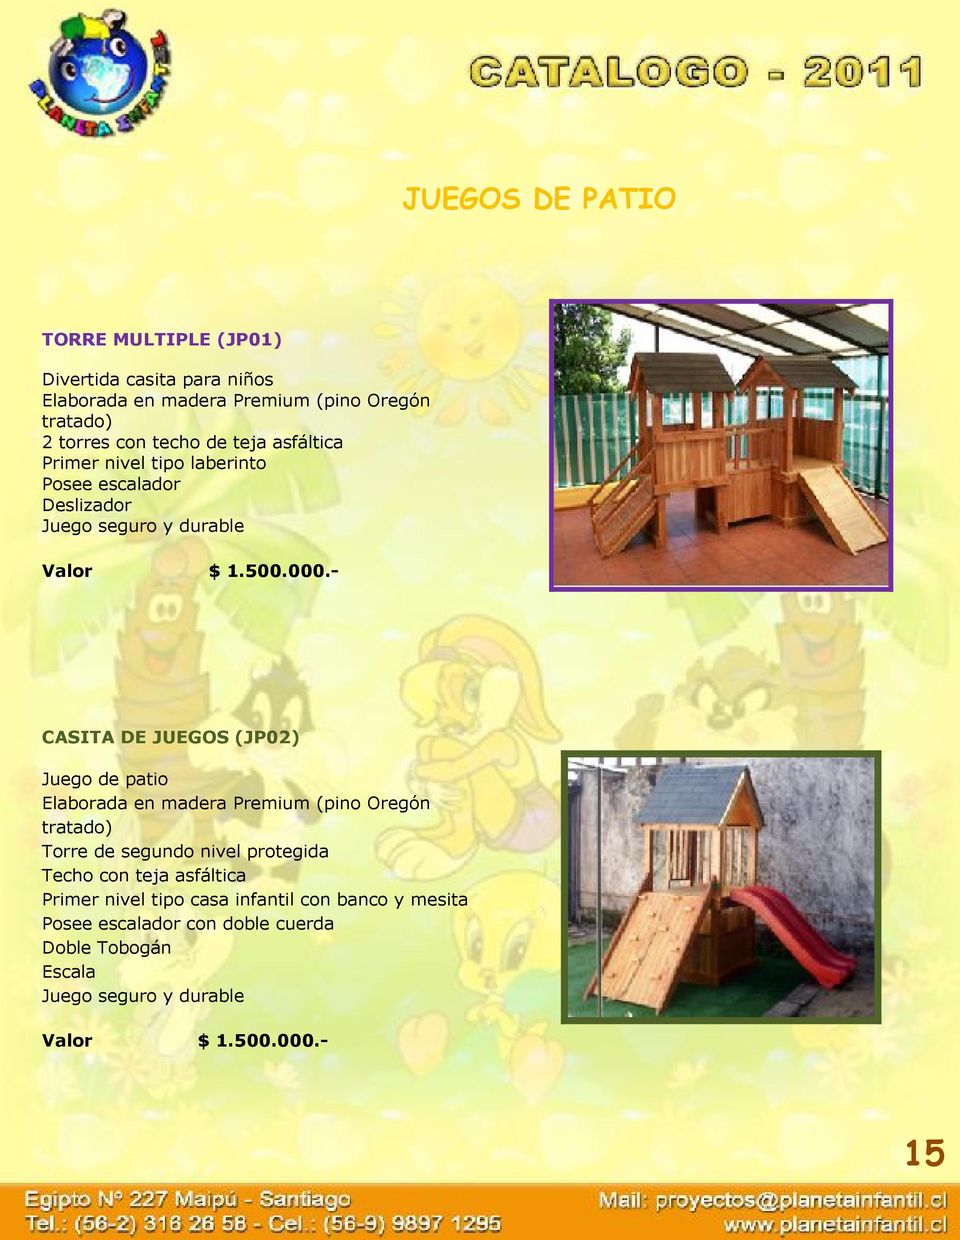 - CASITA DE JUEGOS (JP02) Juego de patio Elaborada en madera Premium (pino Oregón tratado) Torre de segundo nivel protegida Techo con